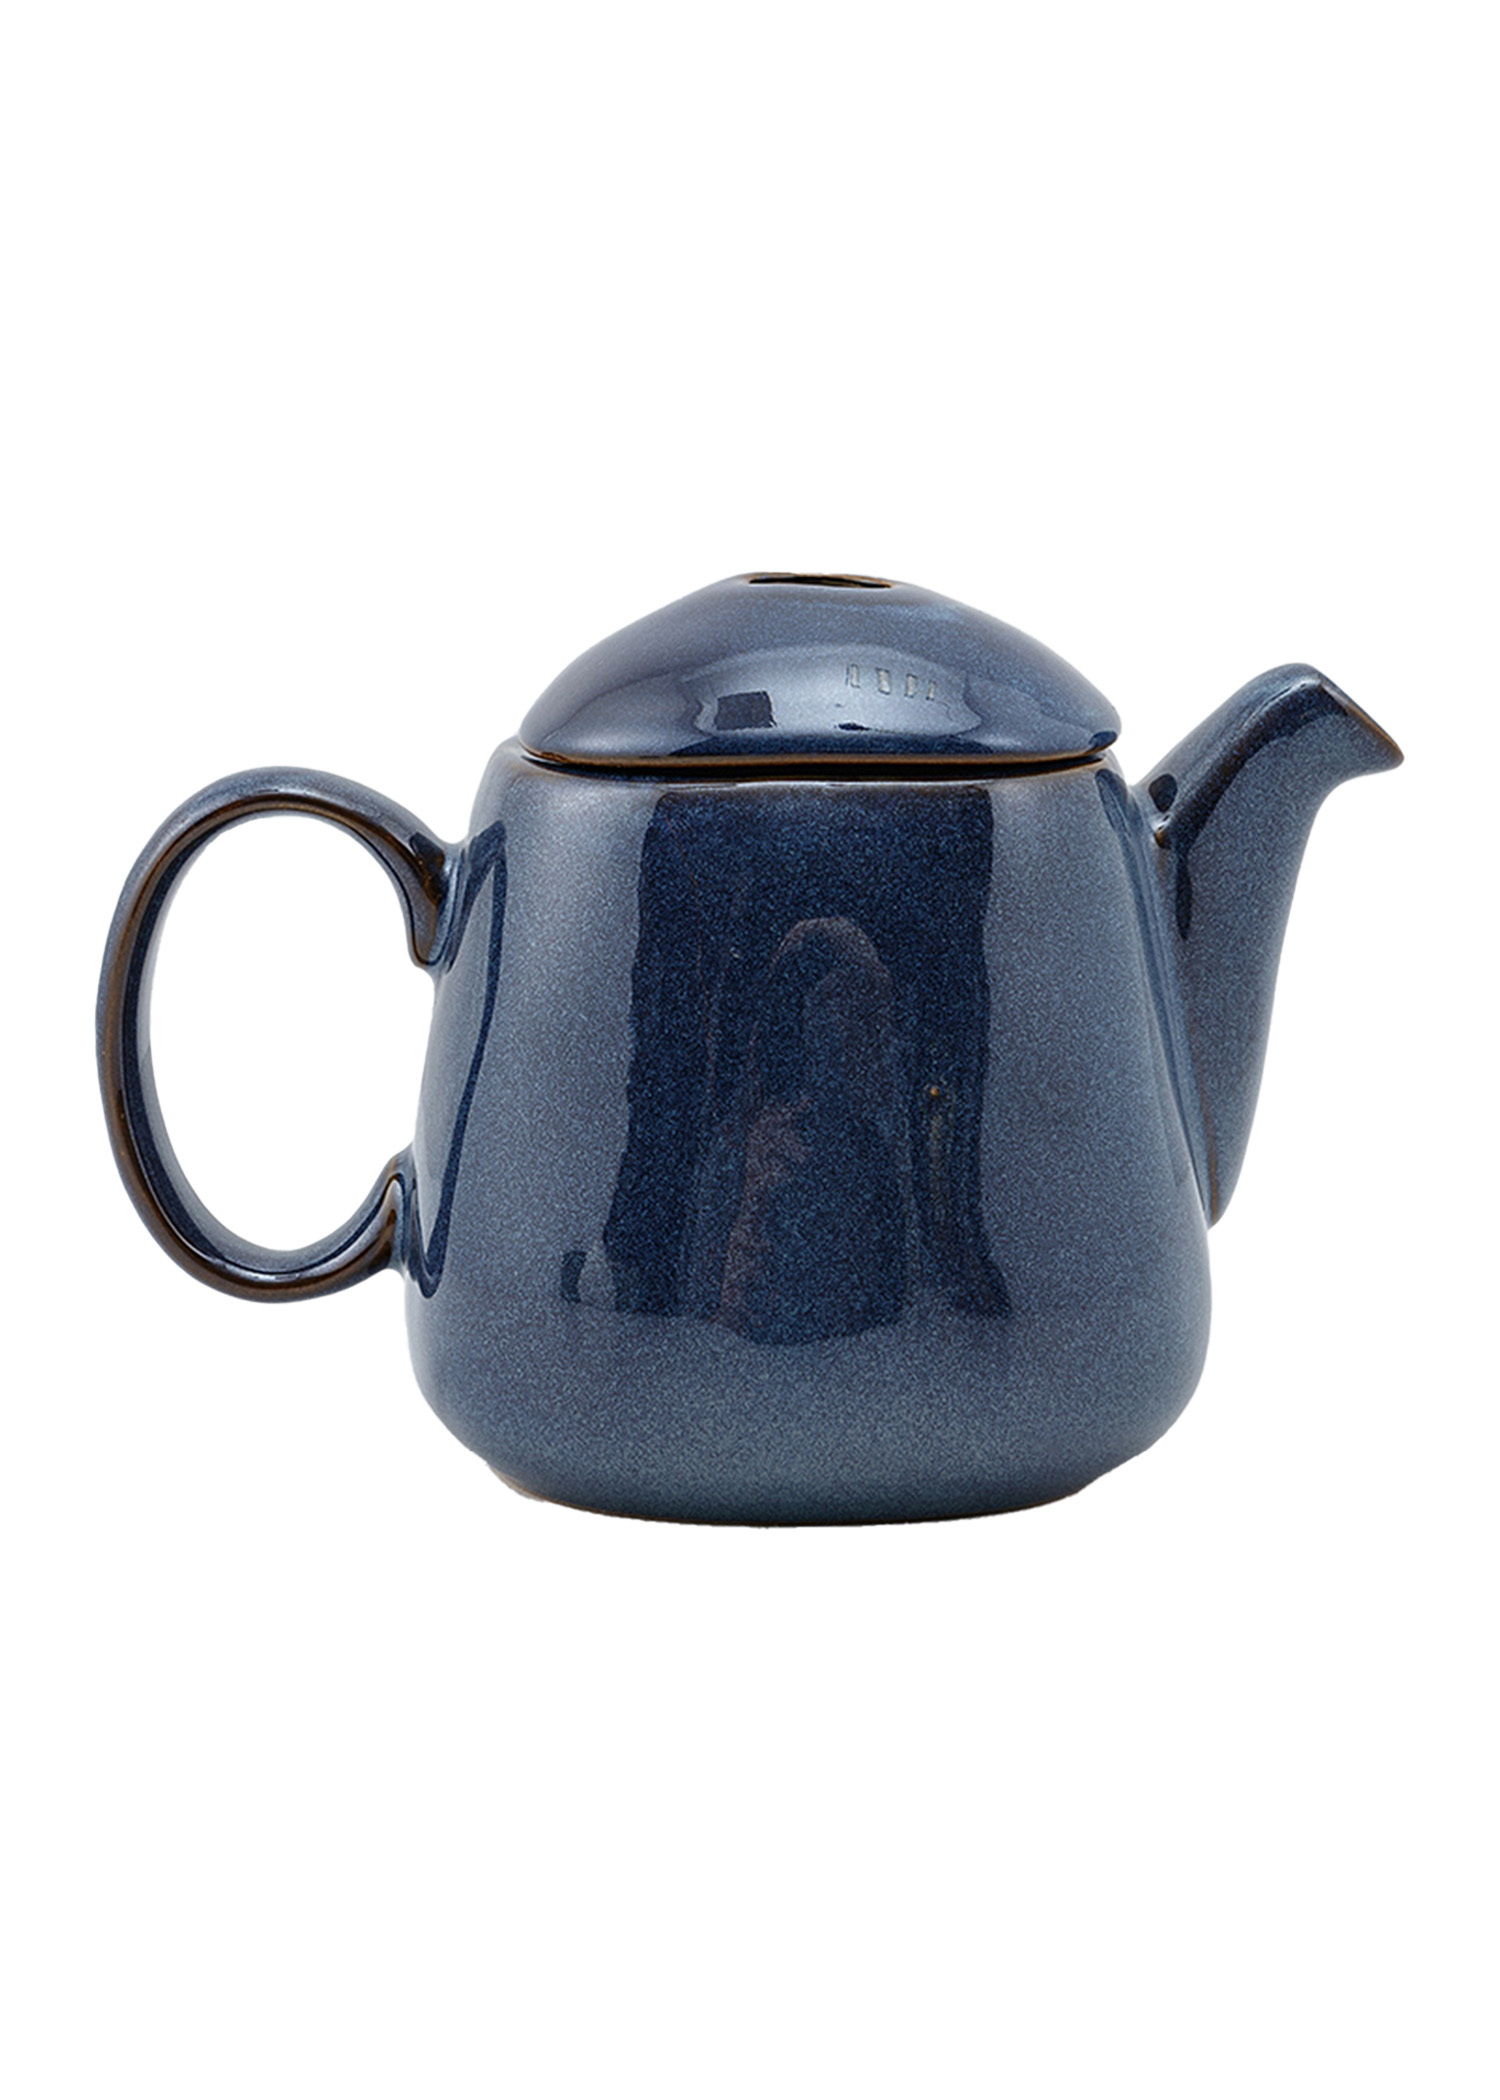 Stoneware teapot Image 0